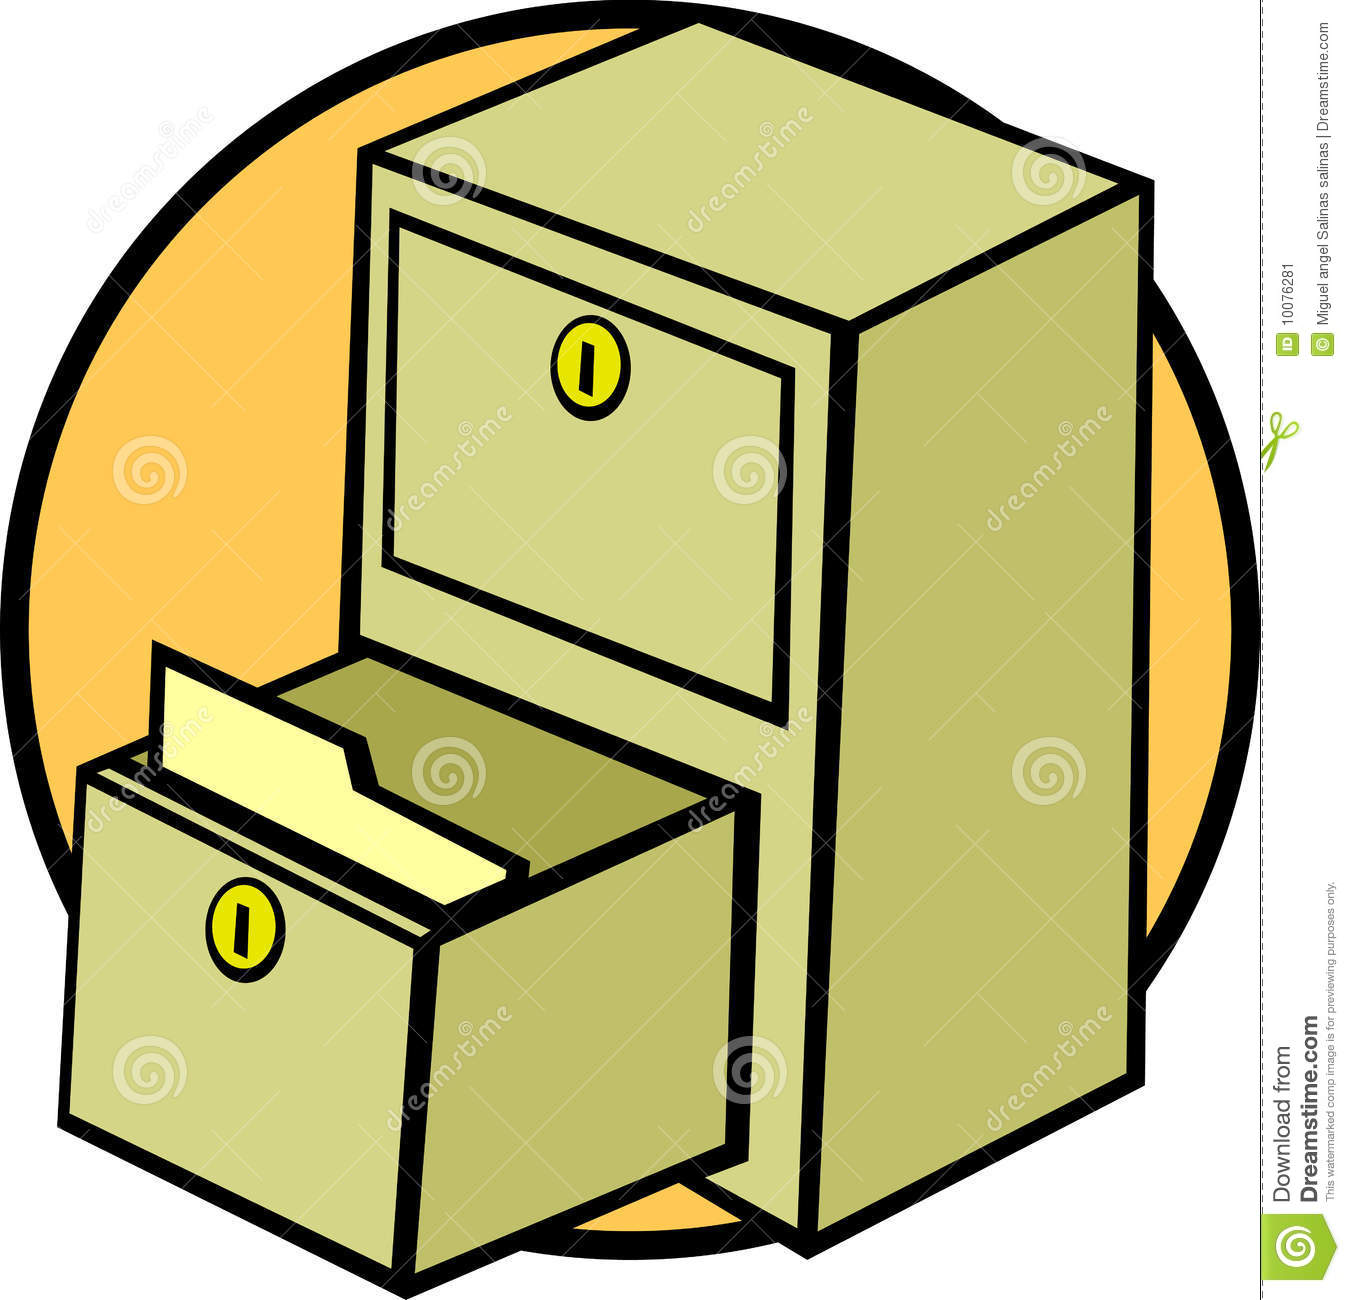 File Cabinet Drawer And Folder Vector Illustration Stock Image   Image